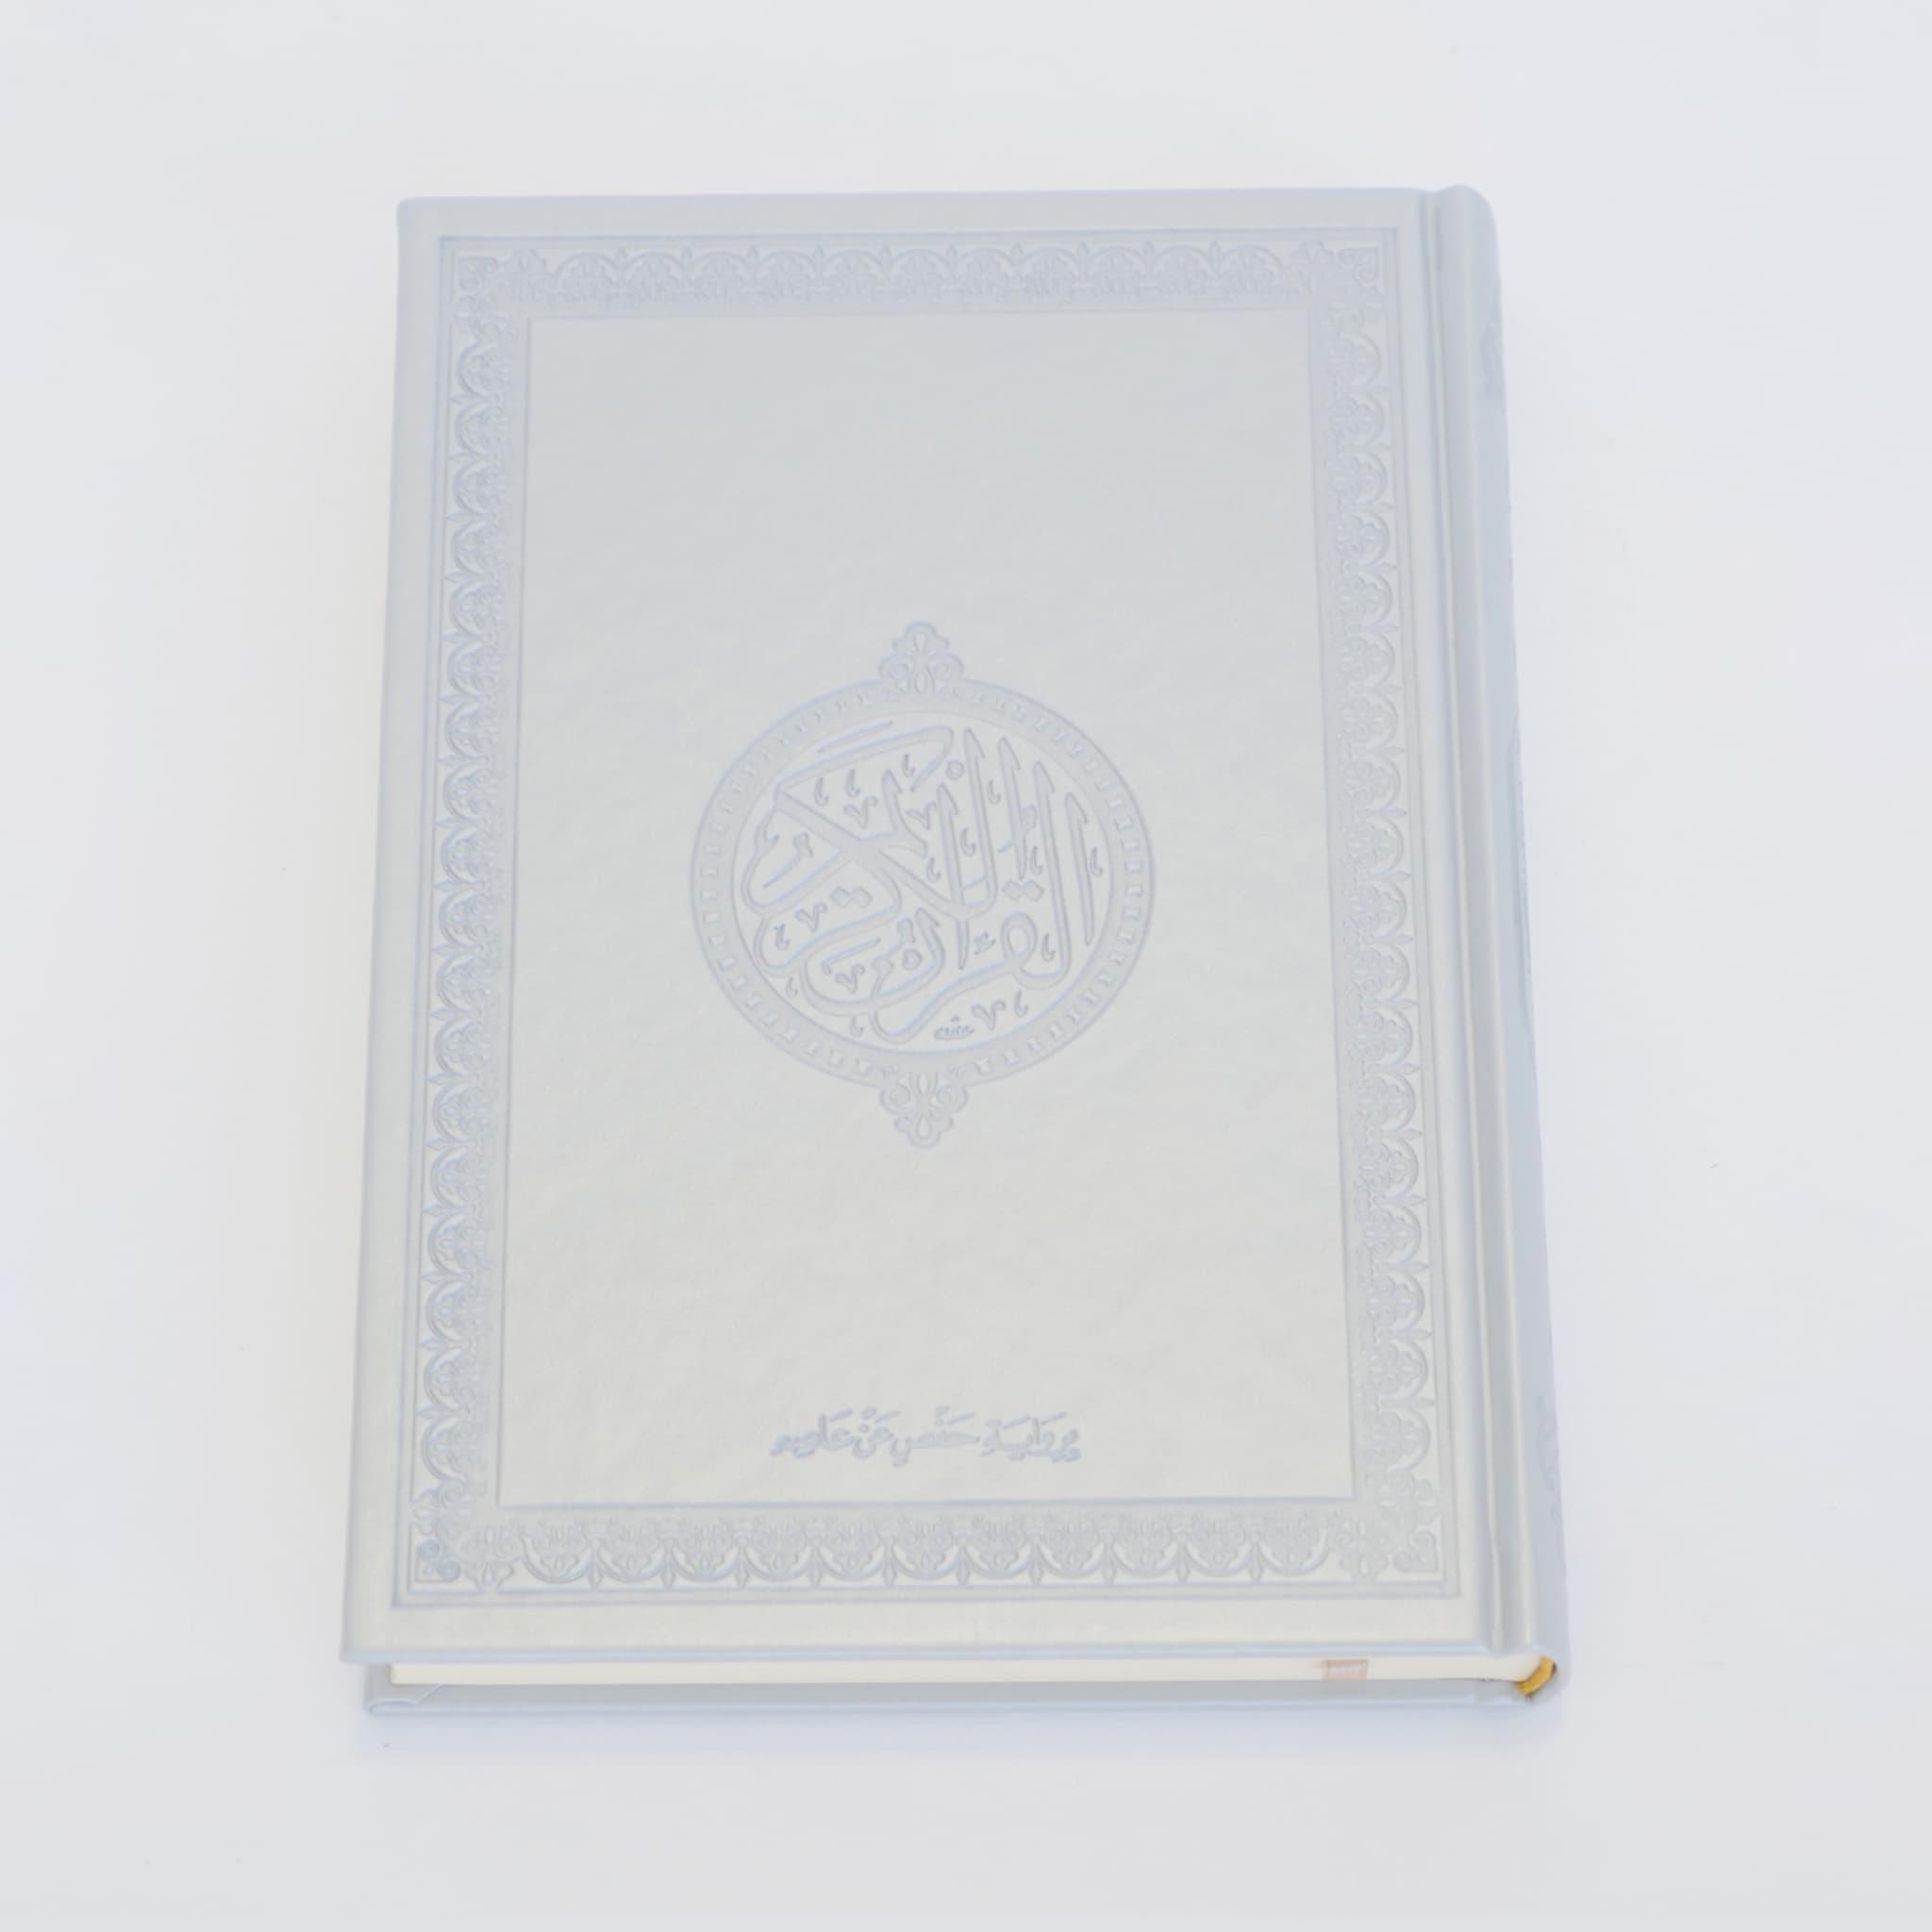 XL Quran (arabisch) - Mein Gebet